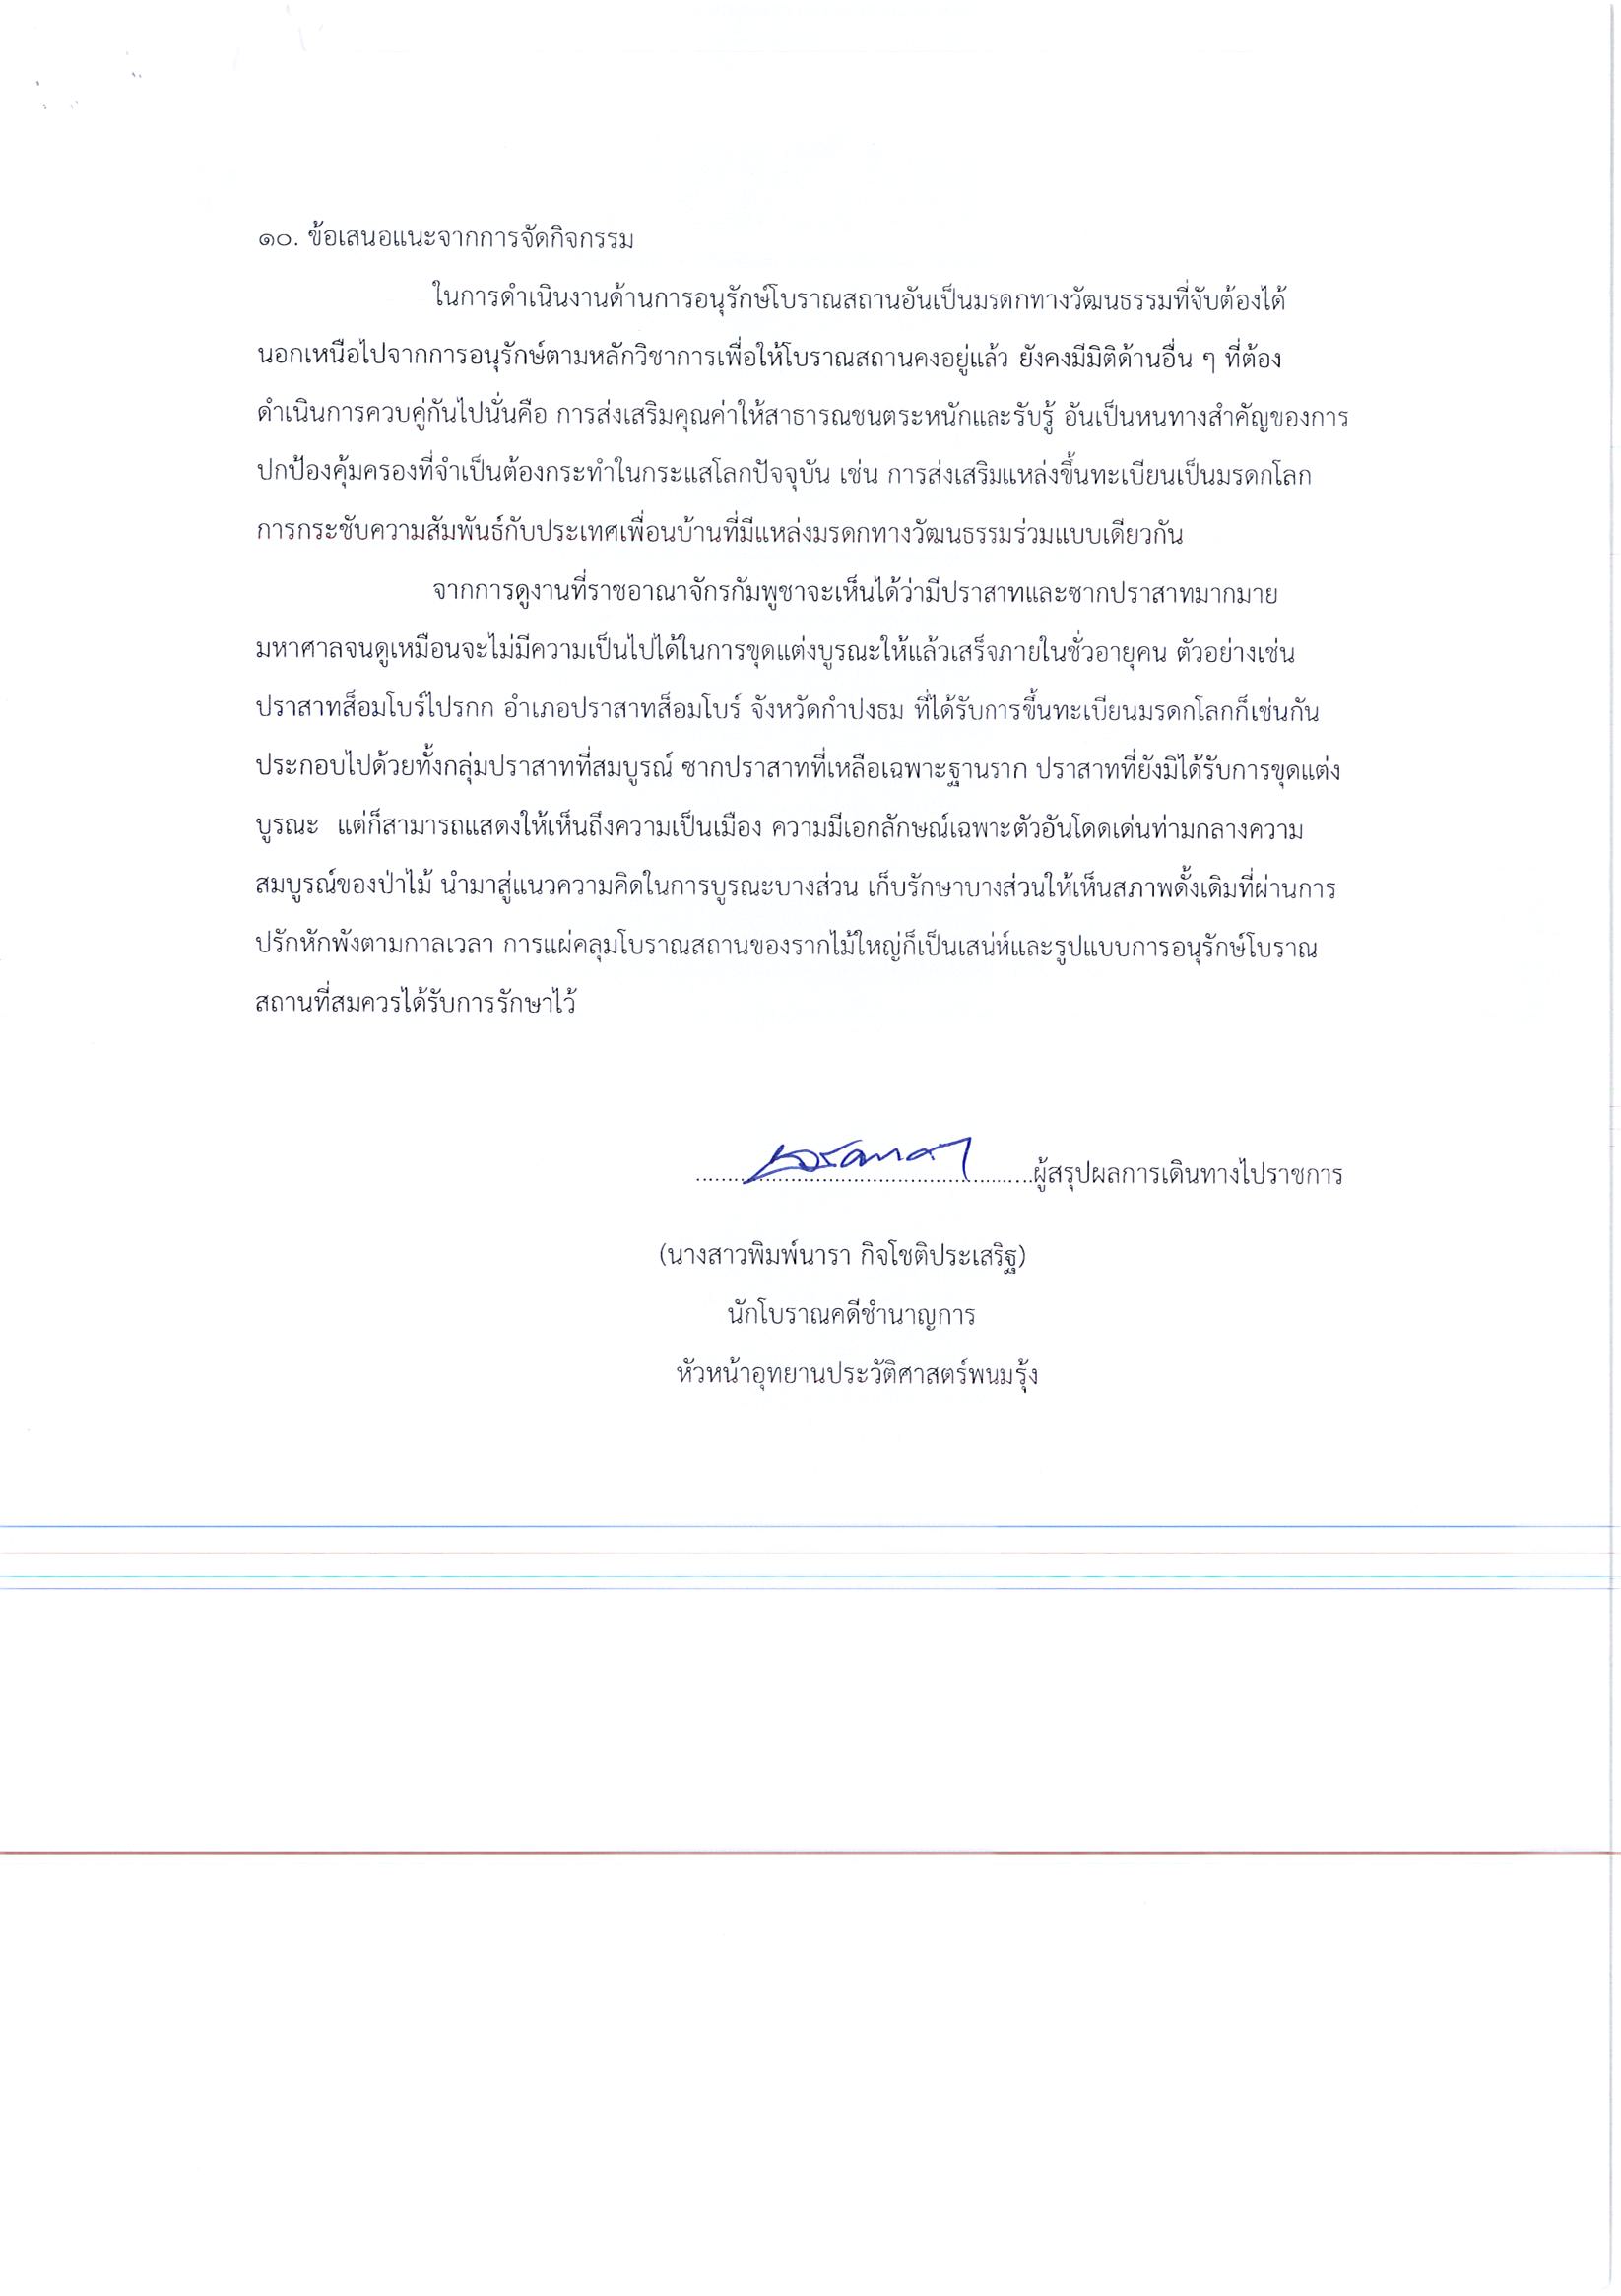 รายงานการเดินทางไปราชการ ณ ราชอาณาจักรกัมพูชา ระหว่างวันที่ 14 – 16 ธันวาคม 2562 โครงการเข้าร่วมคณะของรัฐมนตรีว่าการกระทรวงวัฒนธรรม ตามคำเชิญของรัฐมนตรีว่าการกระทรวงวัฒนธรรมและวิจิตรศิลป์ ราชอาณาจักรกัมพูชา